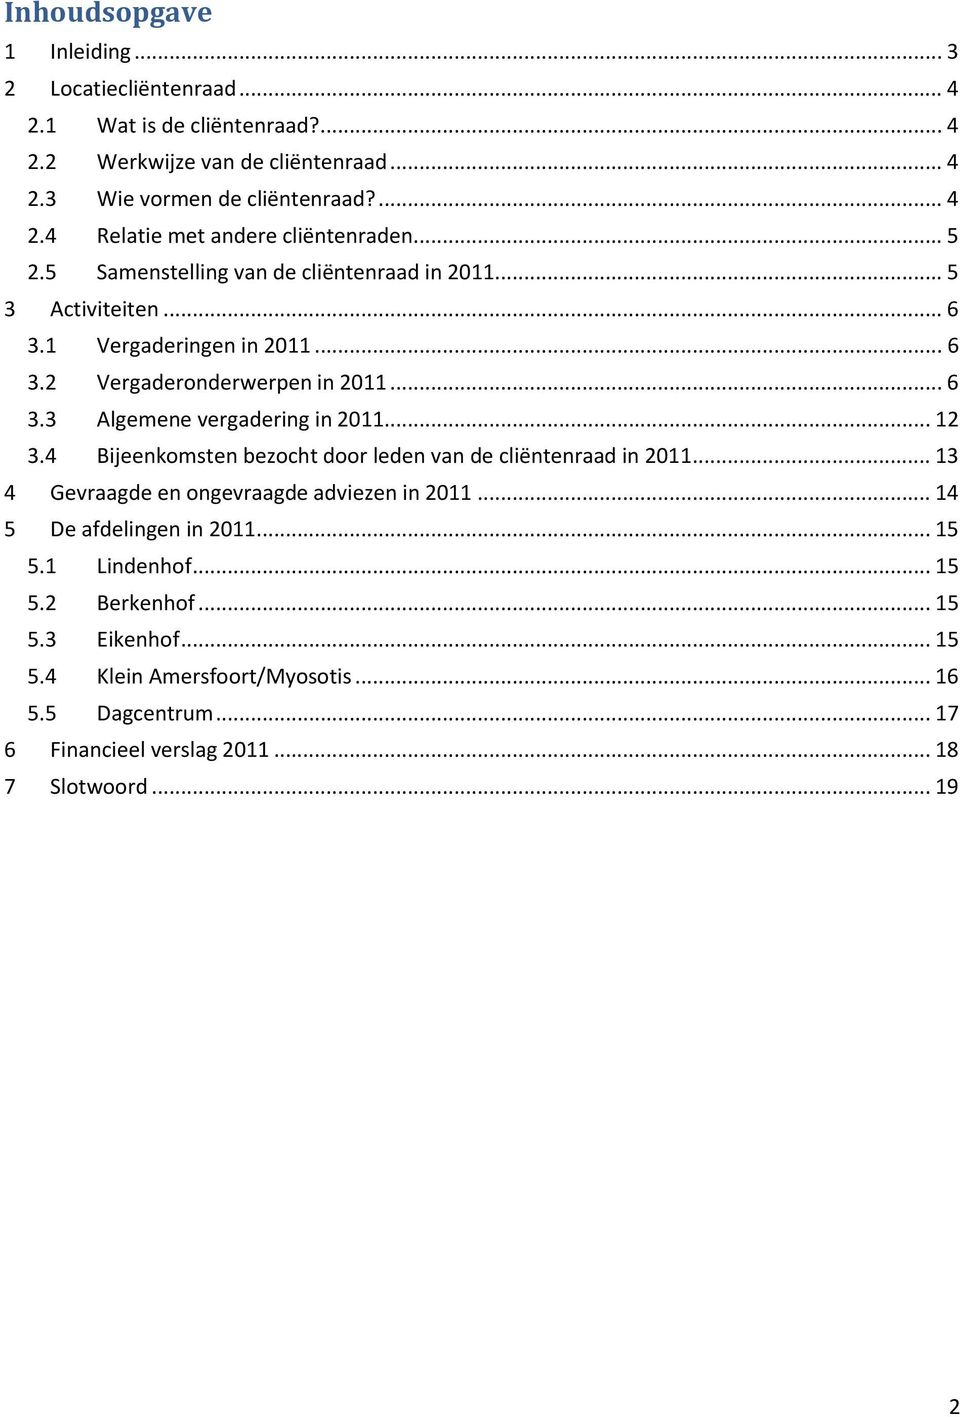 .. 12 3.4 Bijeenkomsten bezocht door leden van de cliëntenraad in 2011... 13 4 Gevraagde en ongevraagde adviezen in 2011... 14 5 De afdelingen in 2011... 15 5.1 Lindenhof... 15 5.2 Berkenhof.